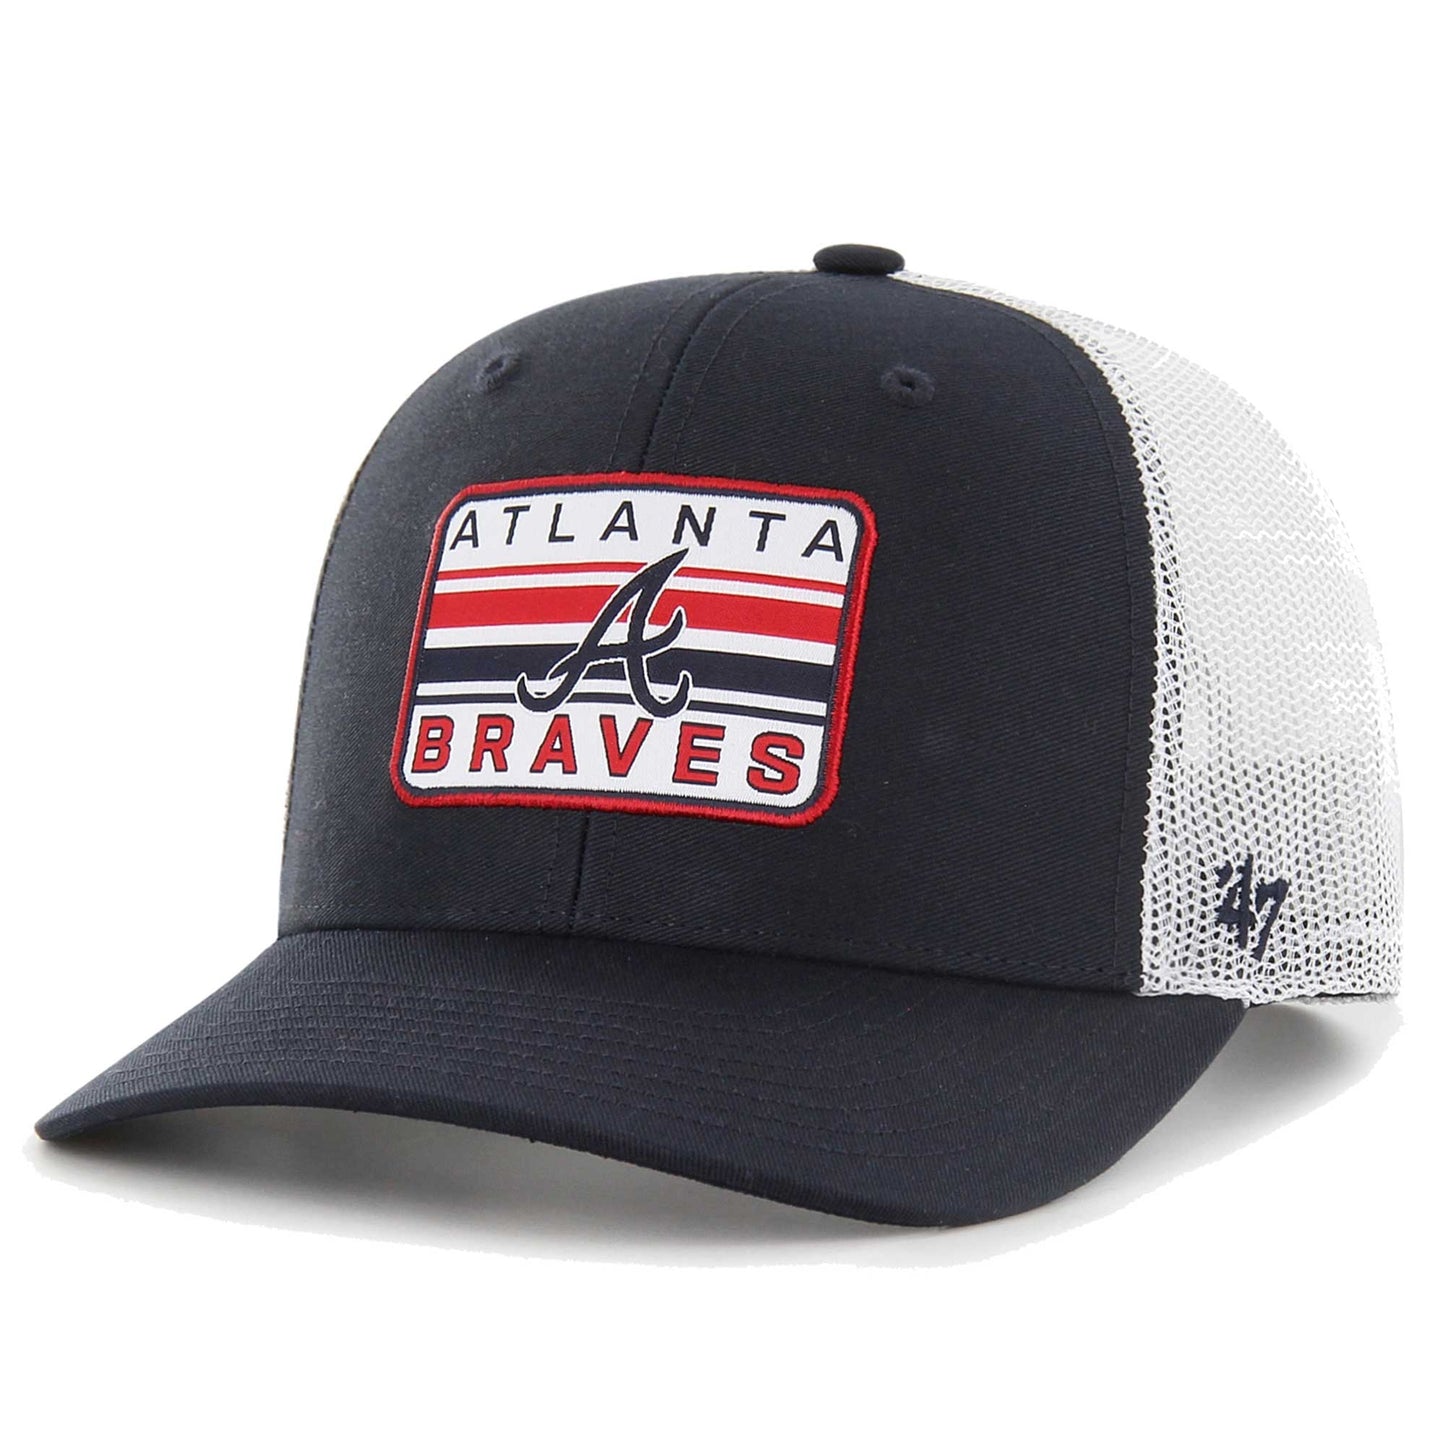 Atlanta Braves '47 Drifter Trucker Adjustable Hat - Navy